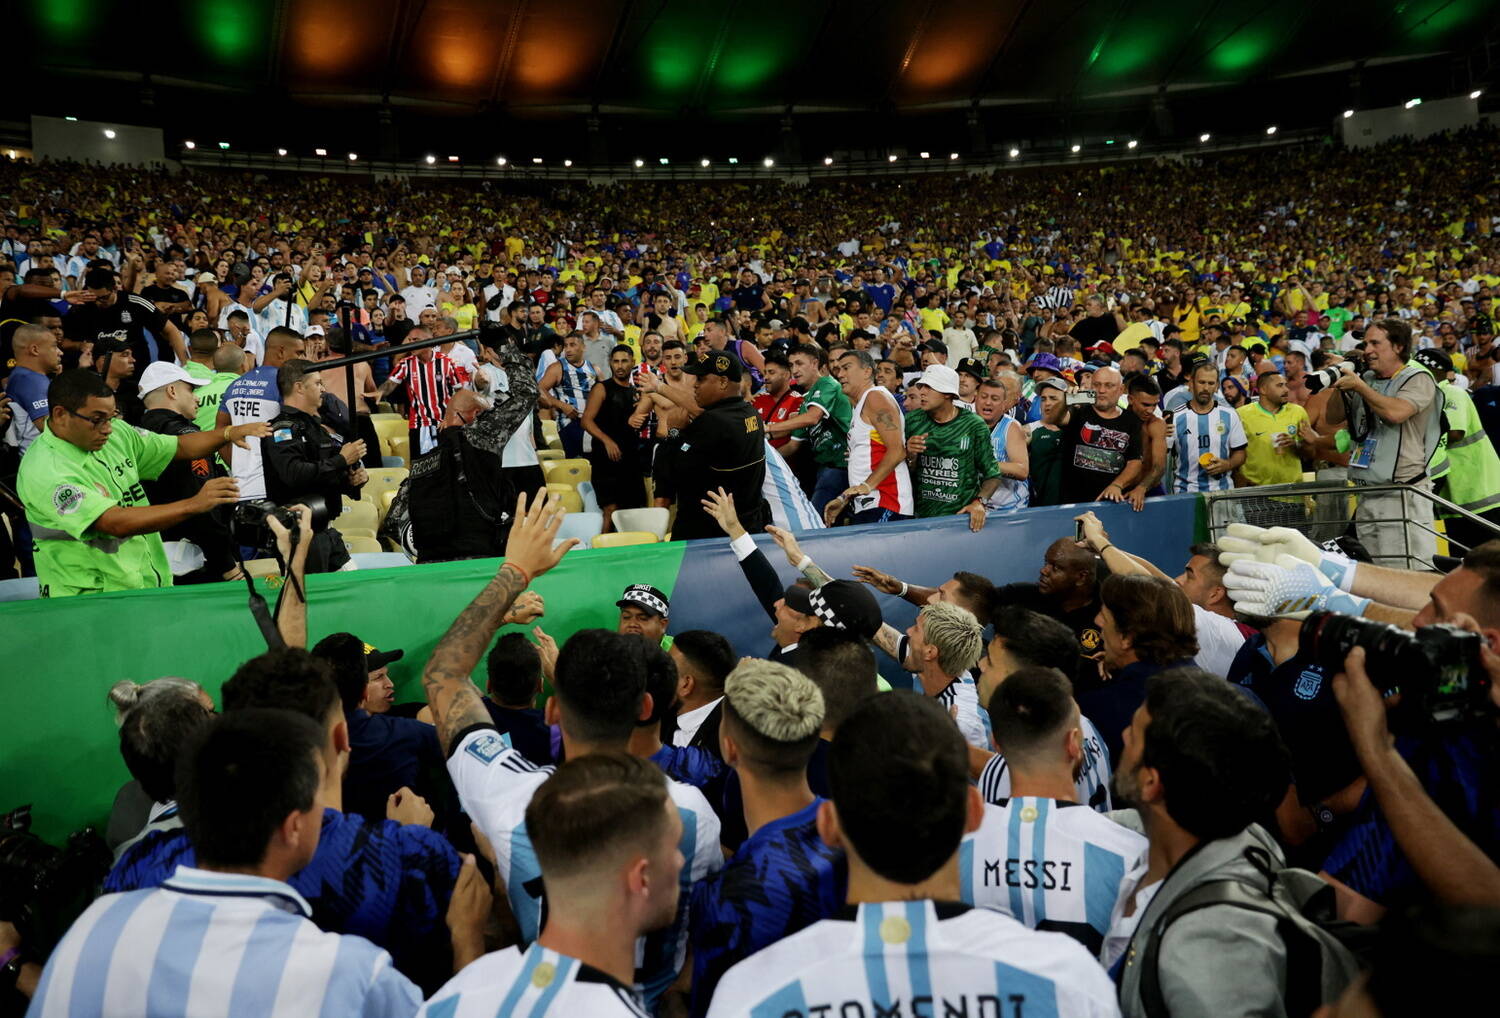 Brasil e Argentina se enfrentam no Maracanã com muito mais que os três  pontos em jogo - Fotos - R7 Futebol